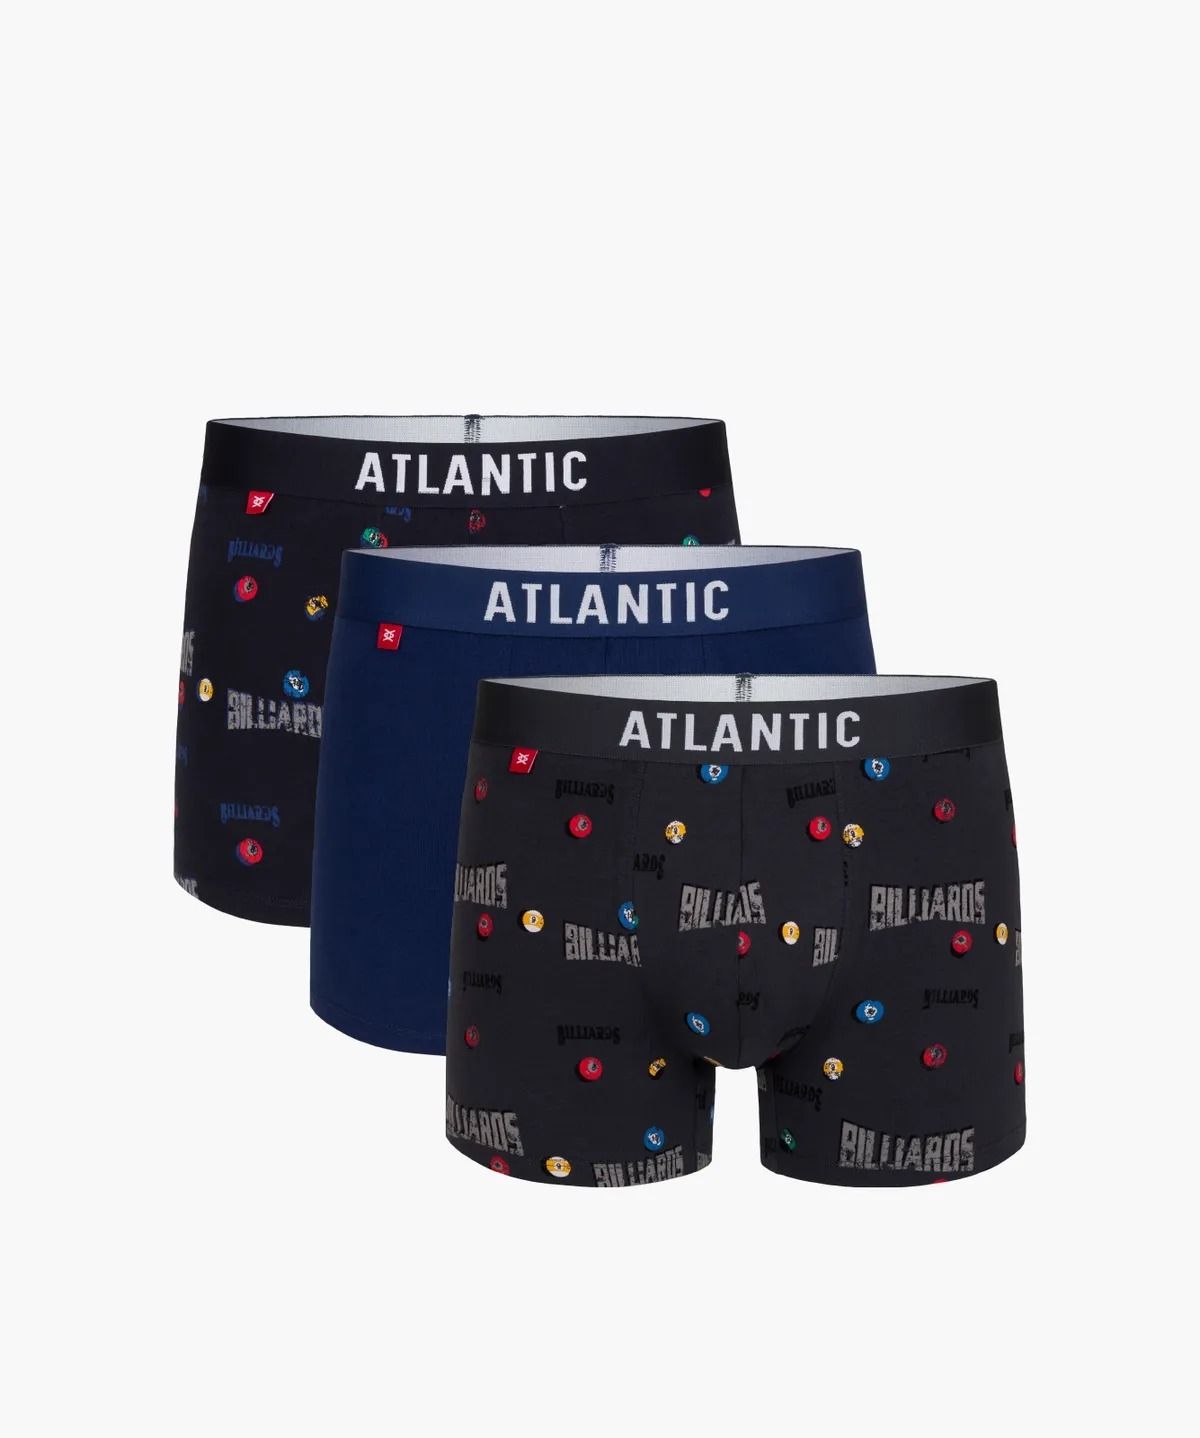 Комплект трусов мужских Atlantic 3MH-011/03 черных M